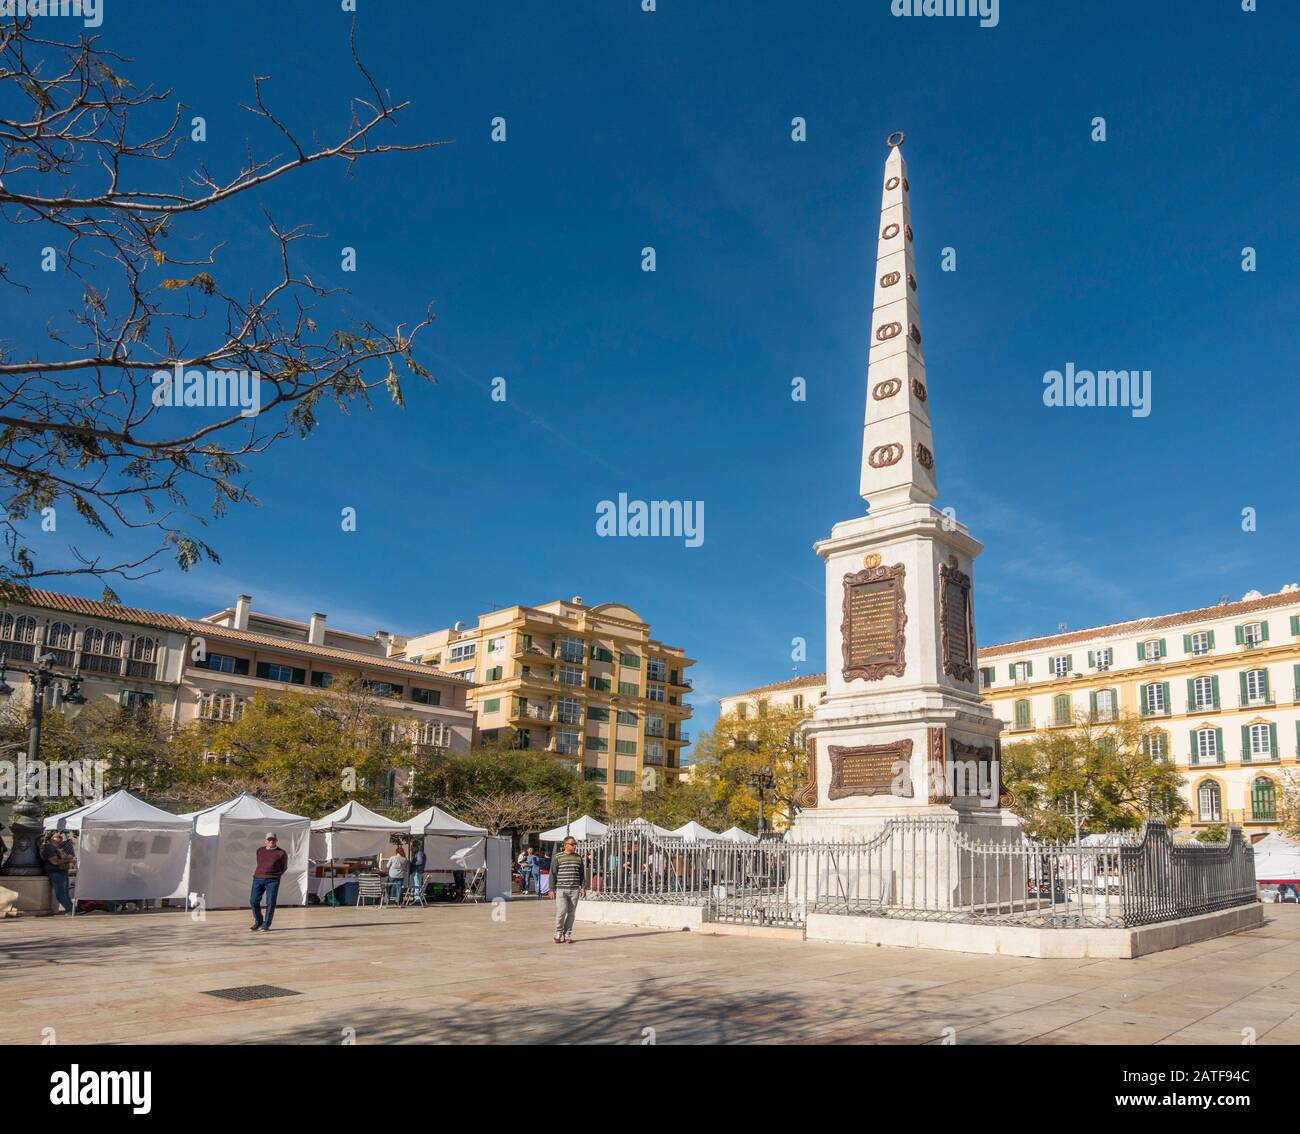 Málaga España. Plaza de la Merced (Plaza de la Misericordia) con el Monumento a Torrijos, plaza pública, Málaga, Andalucía, España. Foto de stock